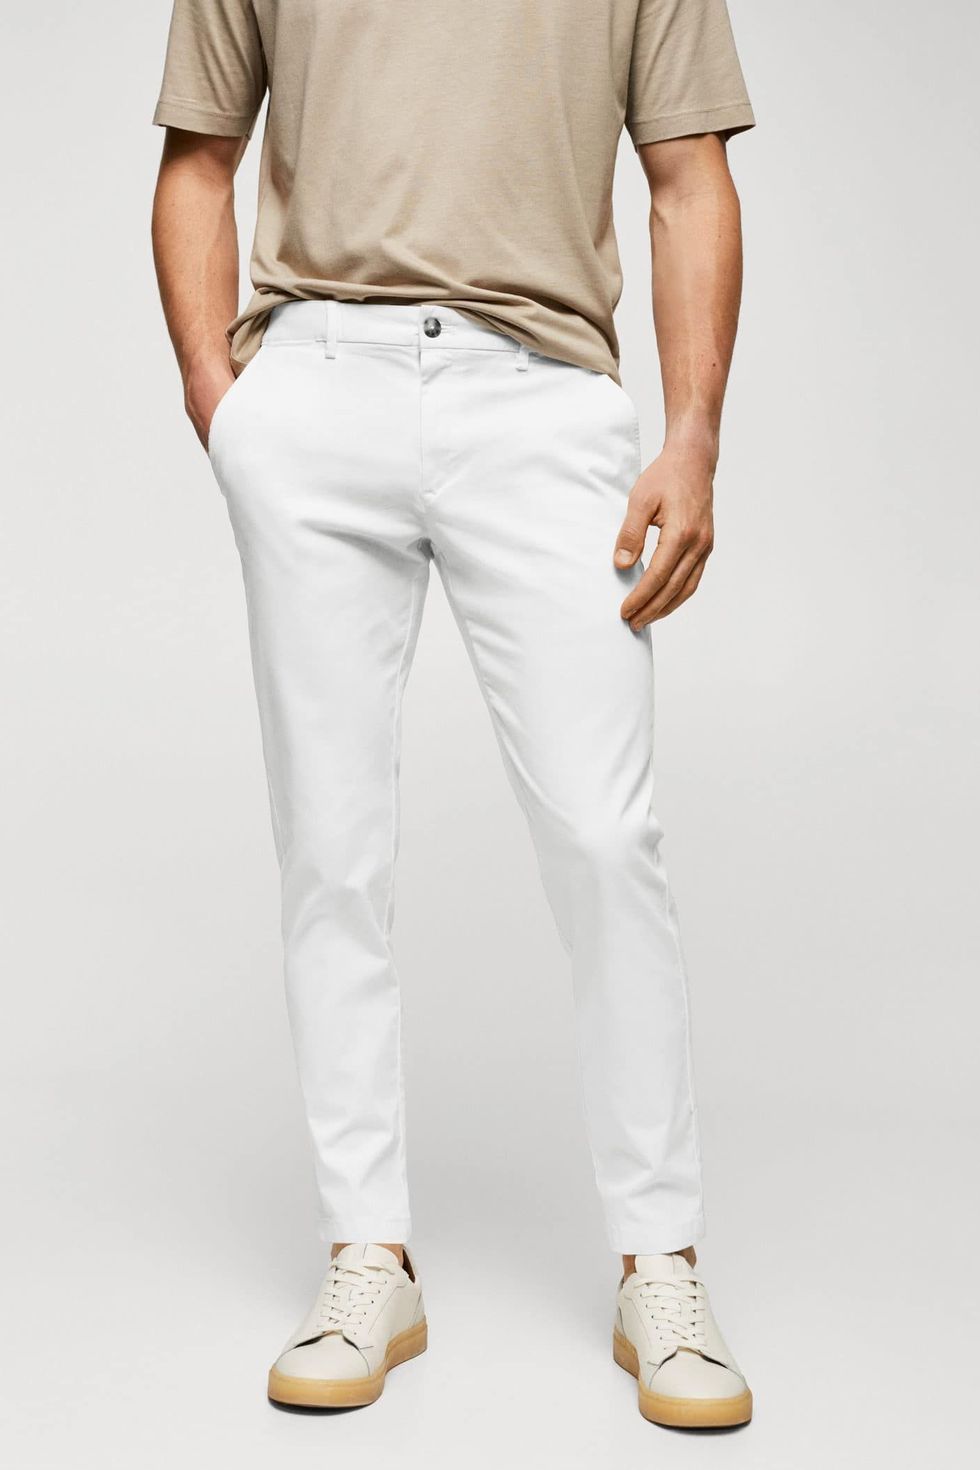 pantalon blanco //